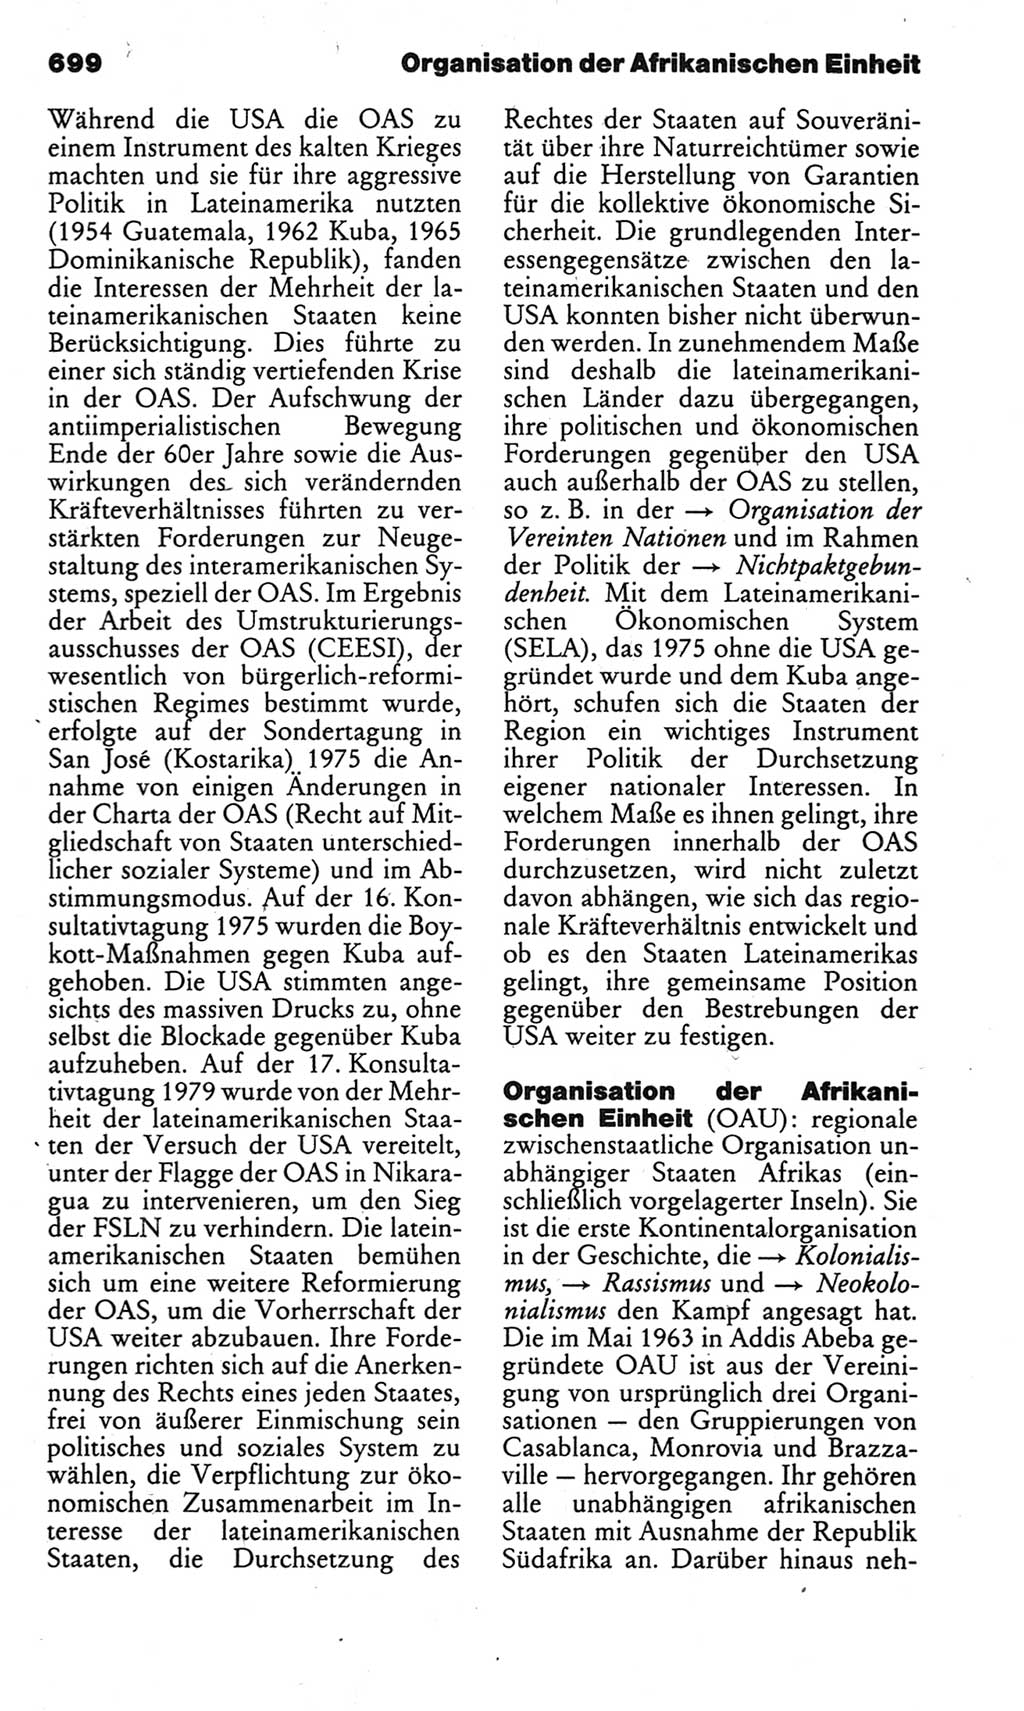 Kleines politisches Wörterbuch [Deutsche Demokratische Republik (DDR)] 1983, Seite 699 (Kl. pol. Wb. DDR 1983, S. 699)